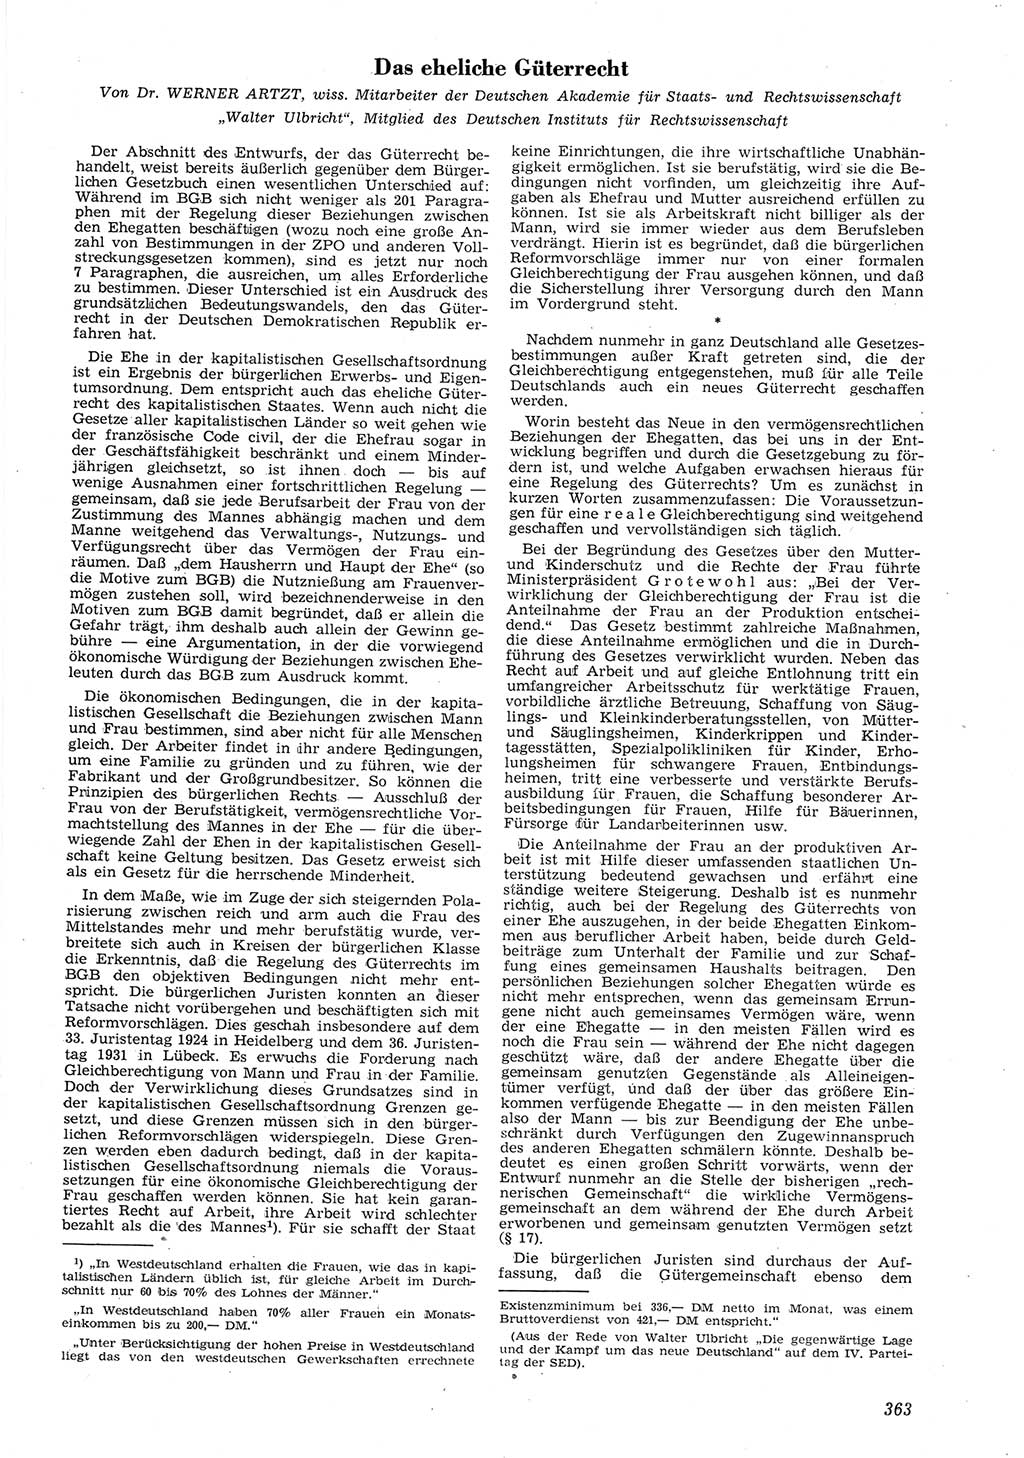 Neue Justiz (NJ), Zeitschrift für Recht und Rechtswissenschaft [Deutsche Demokratische Republik (DDR)], 8. Jahrgang 1954, Seite 363 (NJ DDR 1954, S. 363)